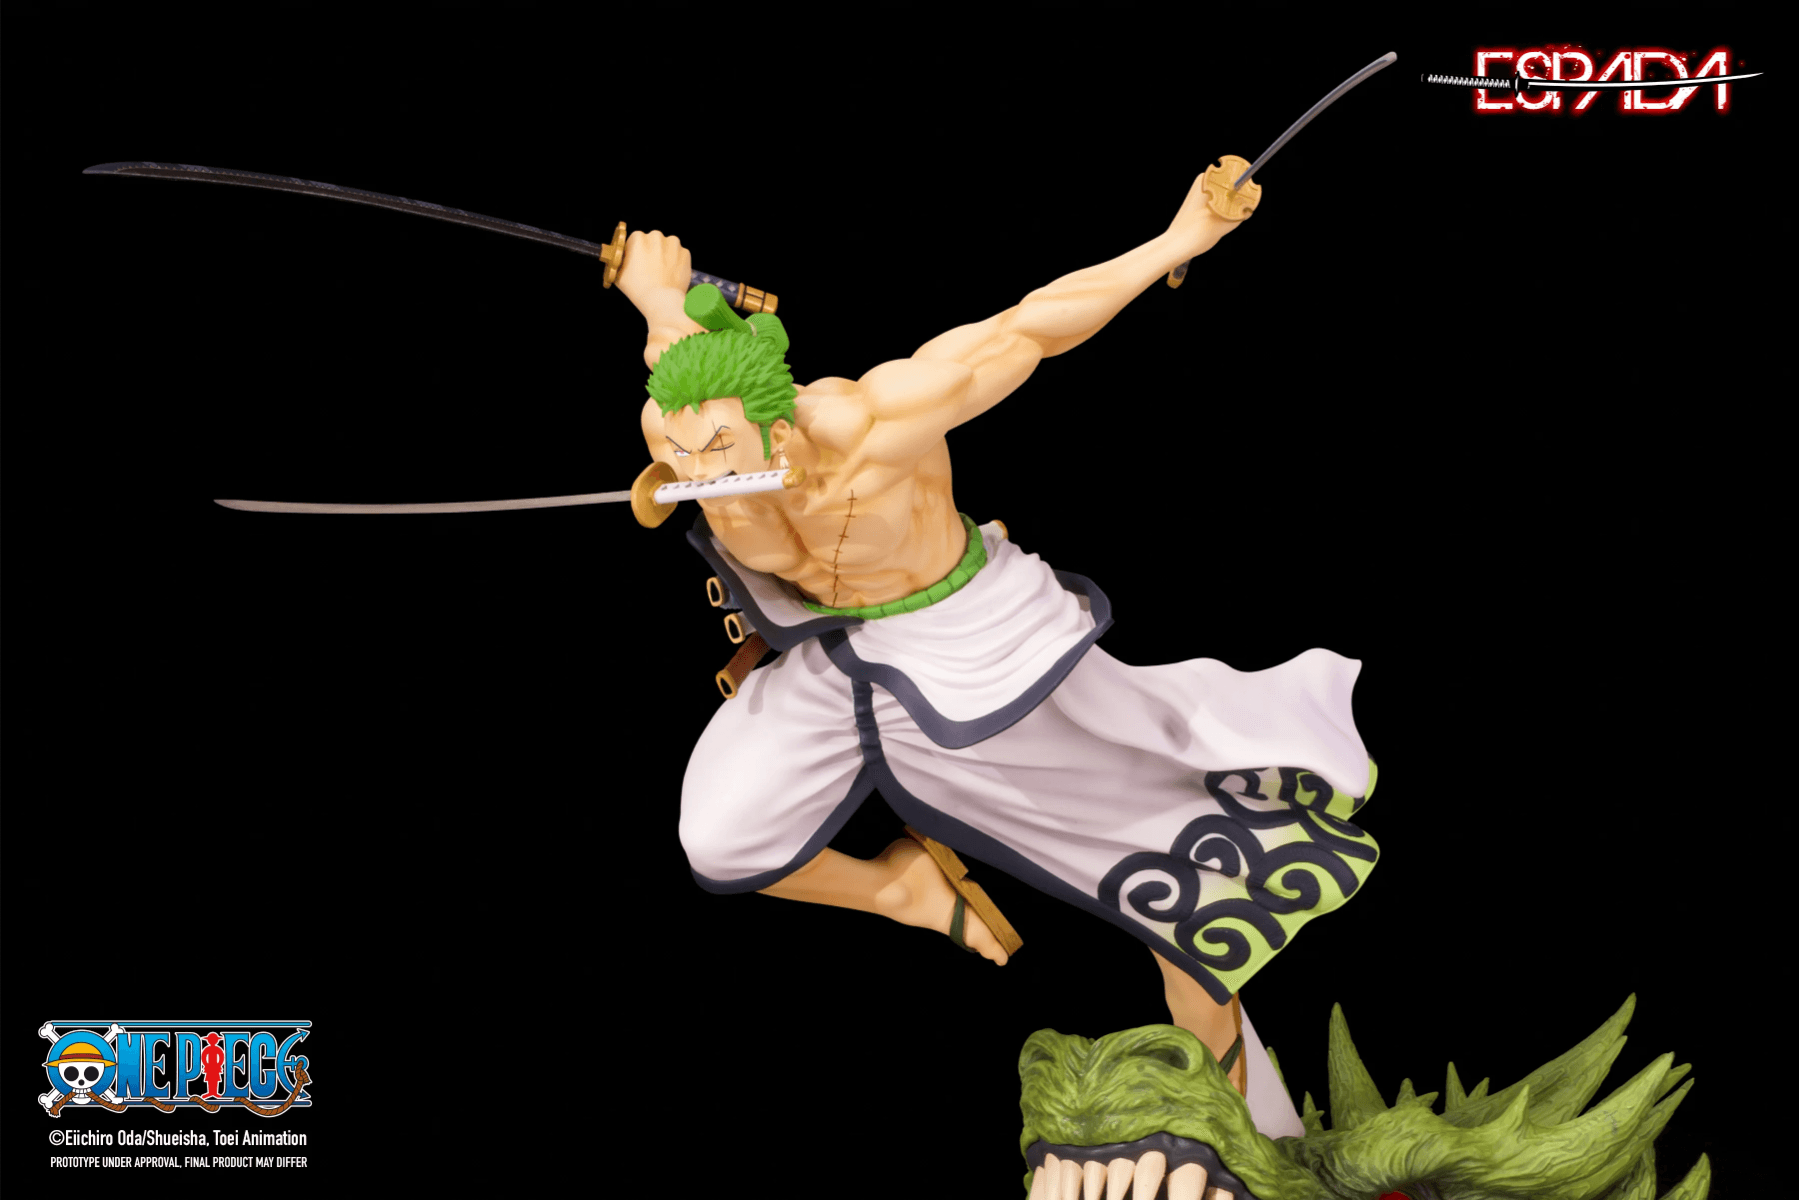 ESARORONOAZORO One Piece - Roronoa Zoro Statue - Espada Art - Titan Pop Culture